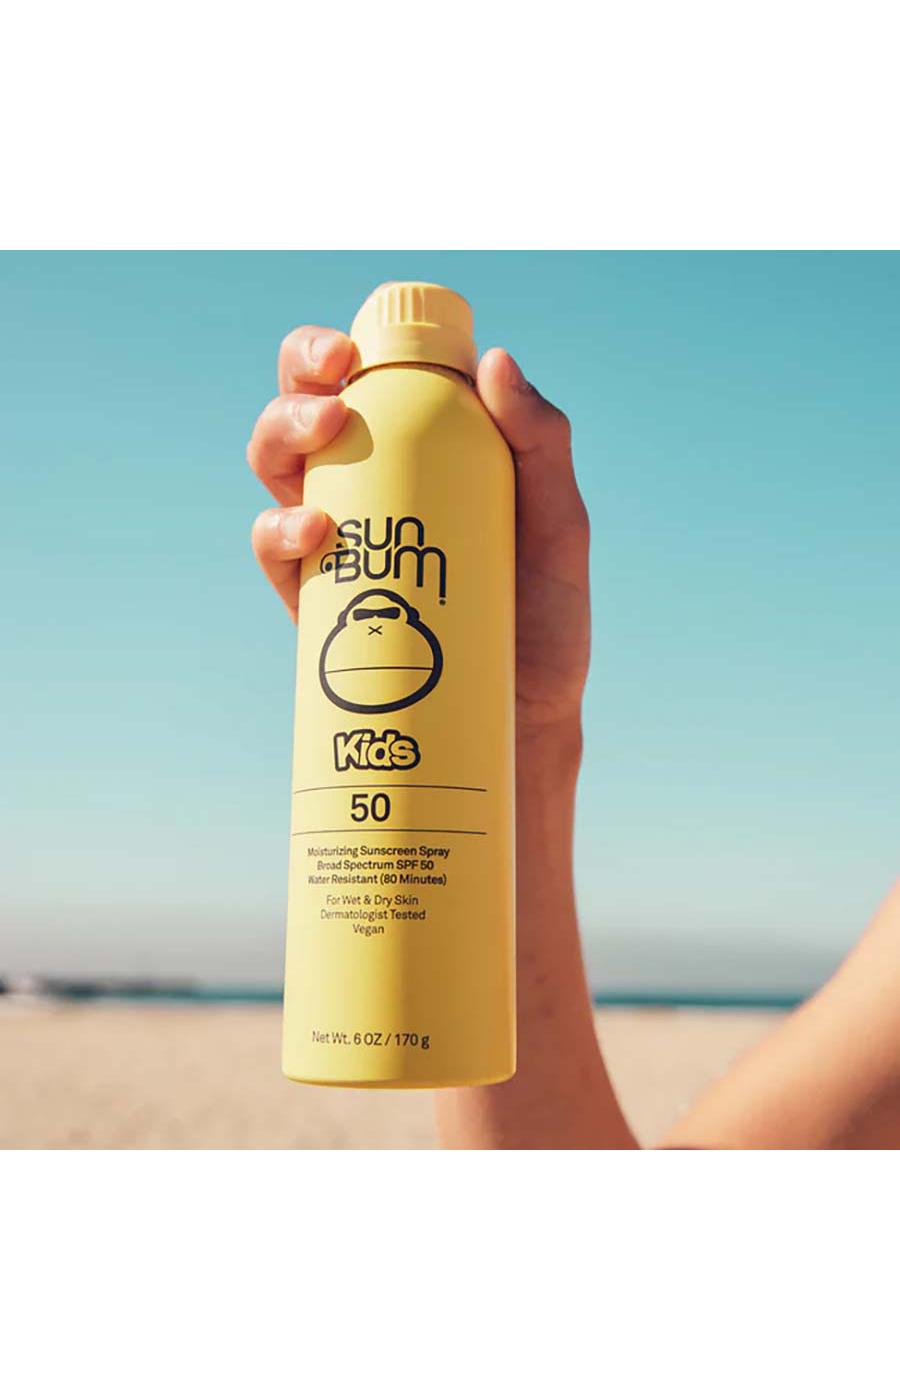 Sun Bum Kids Clear Sunscreen Spray - SPF 50 - Shop Sunscreen